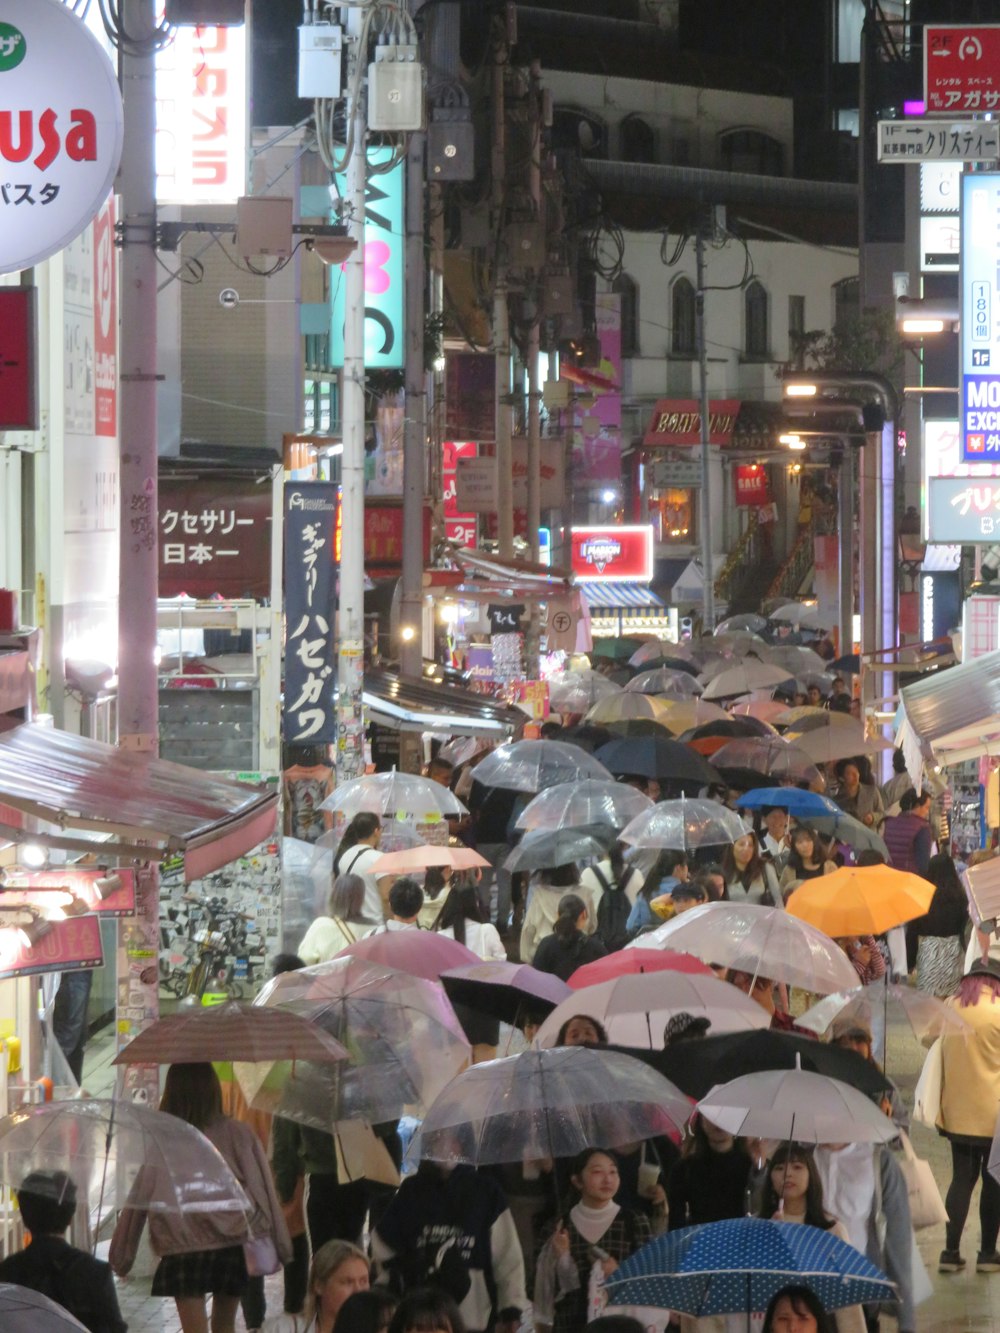 Une foule de personnes marchant dans une rue avec des parapluies